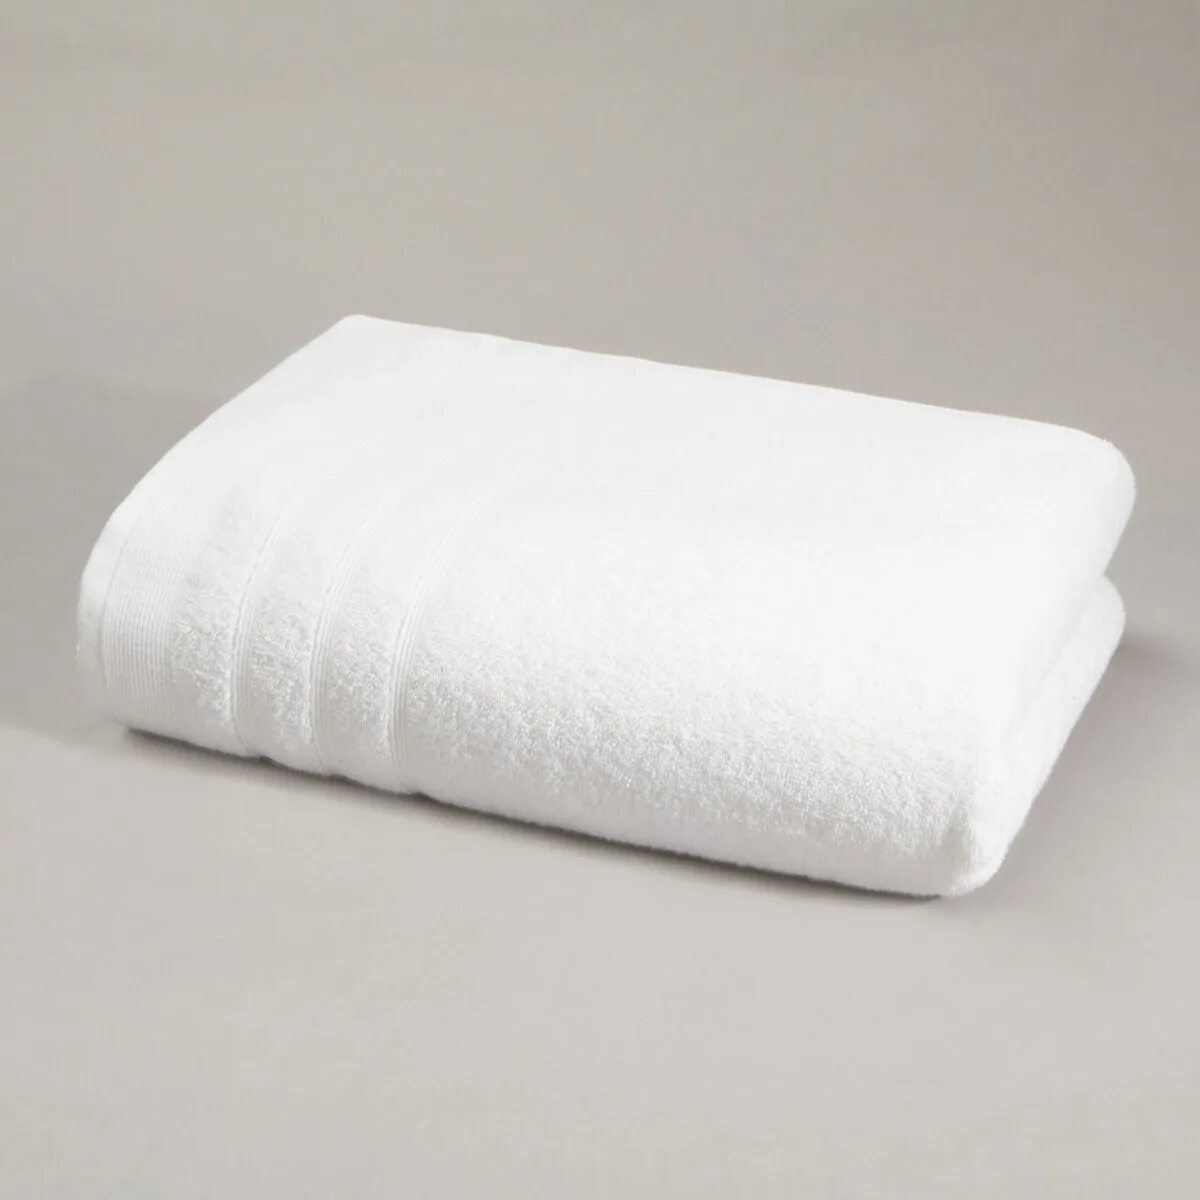 Белое банное полотенце. Полотенце. Полотенце махровое белый. Полотенце банное белое. Белое полотенце банное махровое.